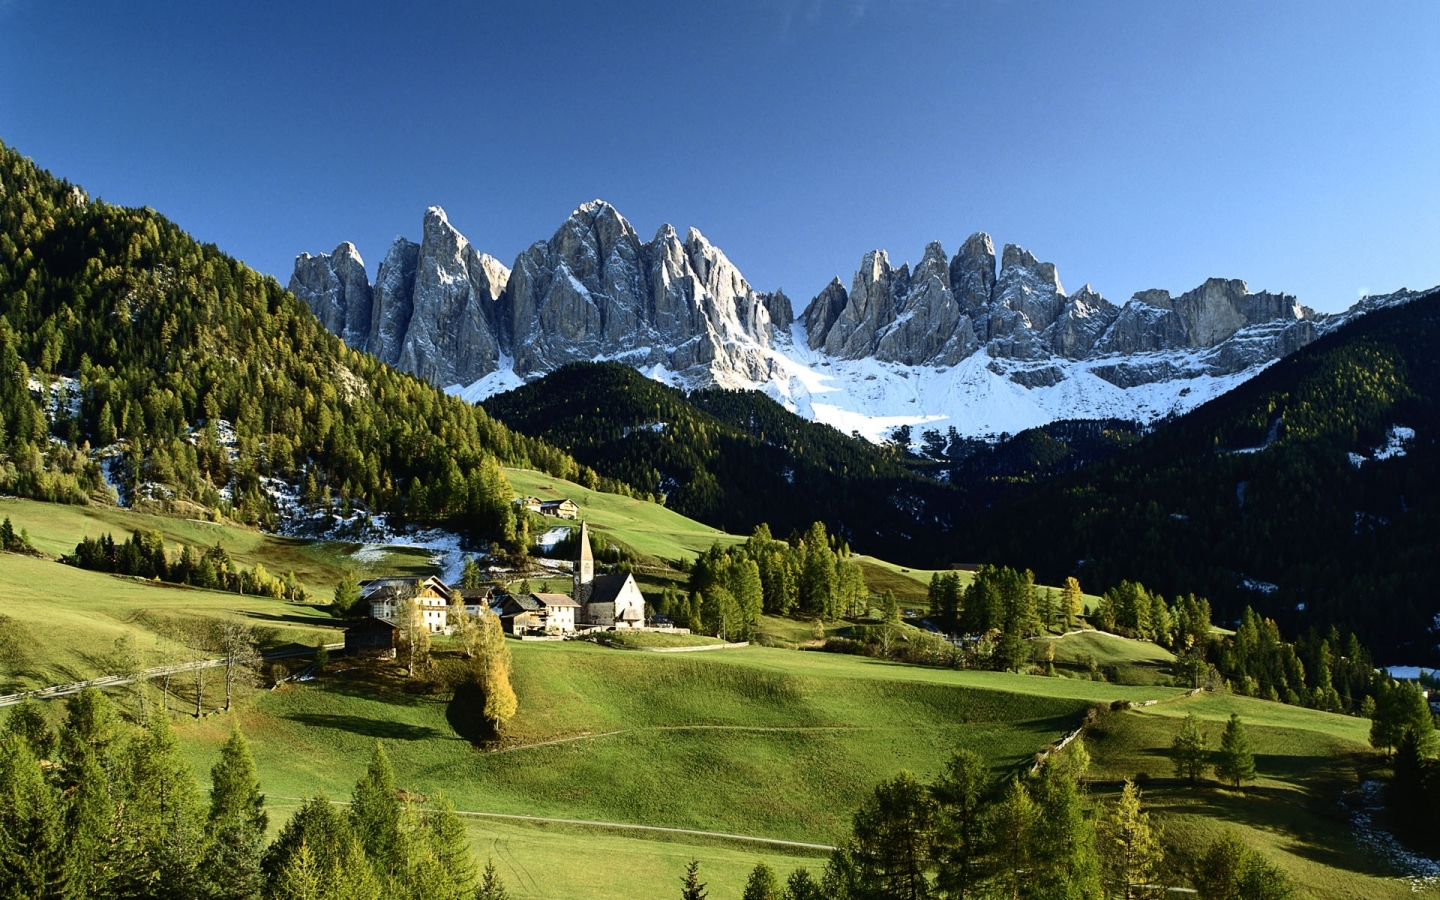 Veduta delle Dolomiti for 1440 x 900 widescreen resolution